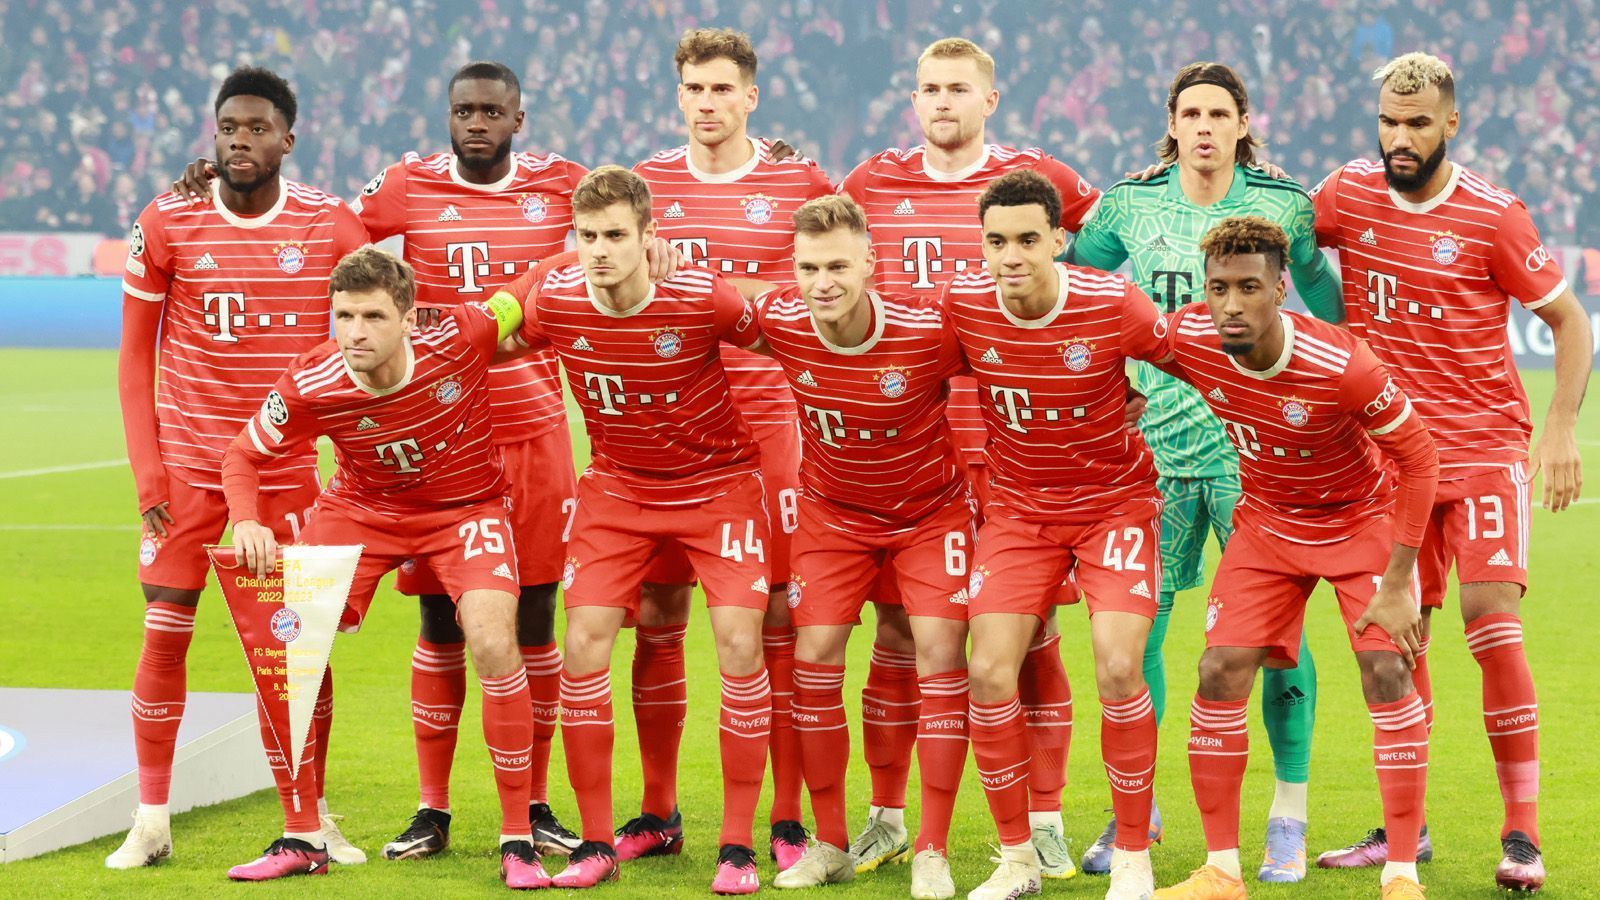 
                <strong>Gute Karten für Bayern München</strong><br>
                Hinzukommen die acht besten Teams einer UEFA-Rangliste über denselben Zeitraum. Aktuell führt der FC Bayern die Fünf-Jahres-Wertung der Uefa an, wäre damit wohl vorbei.
              